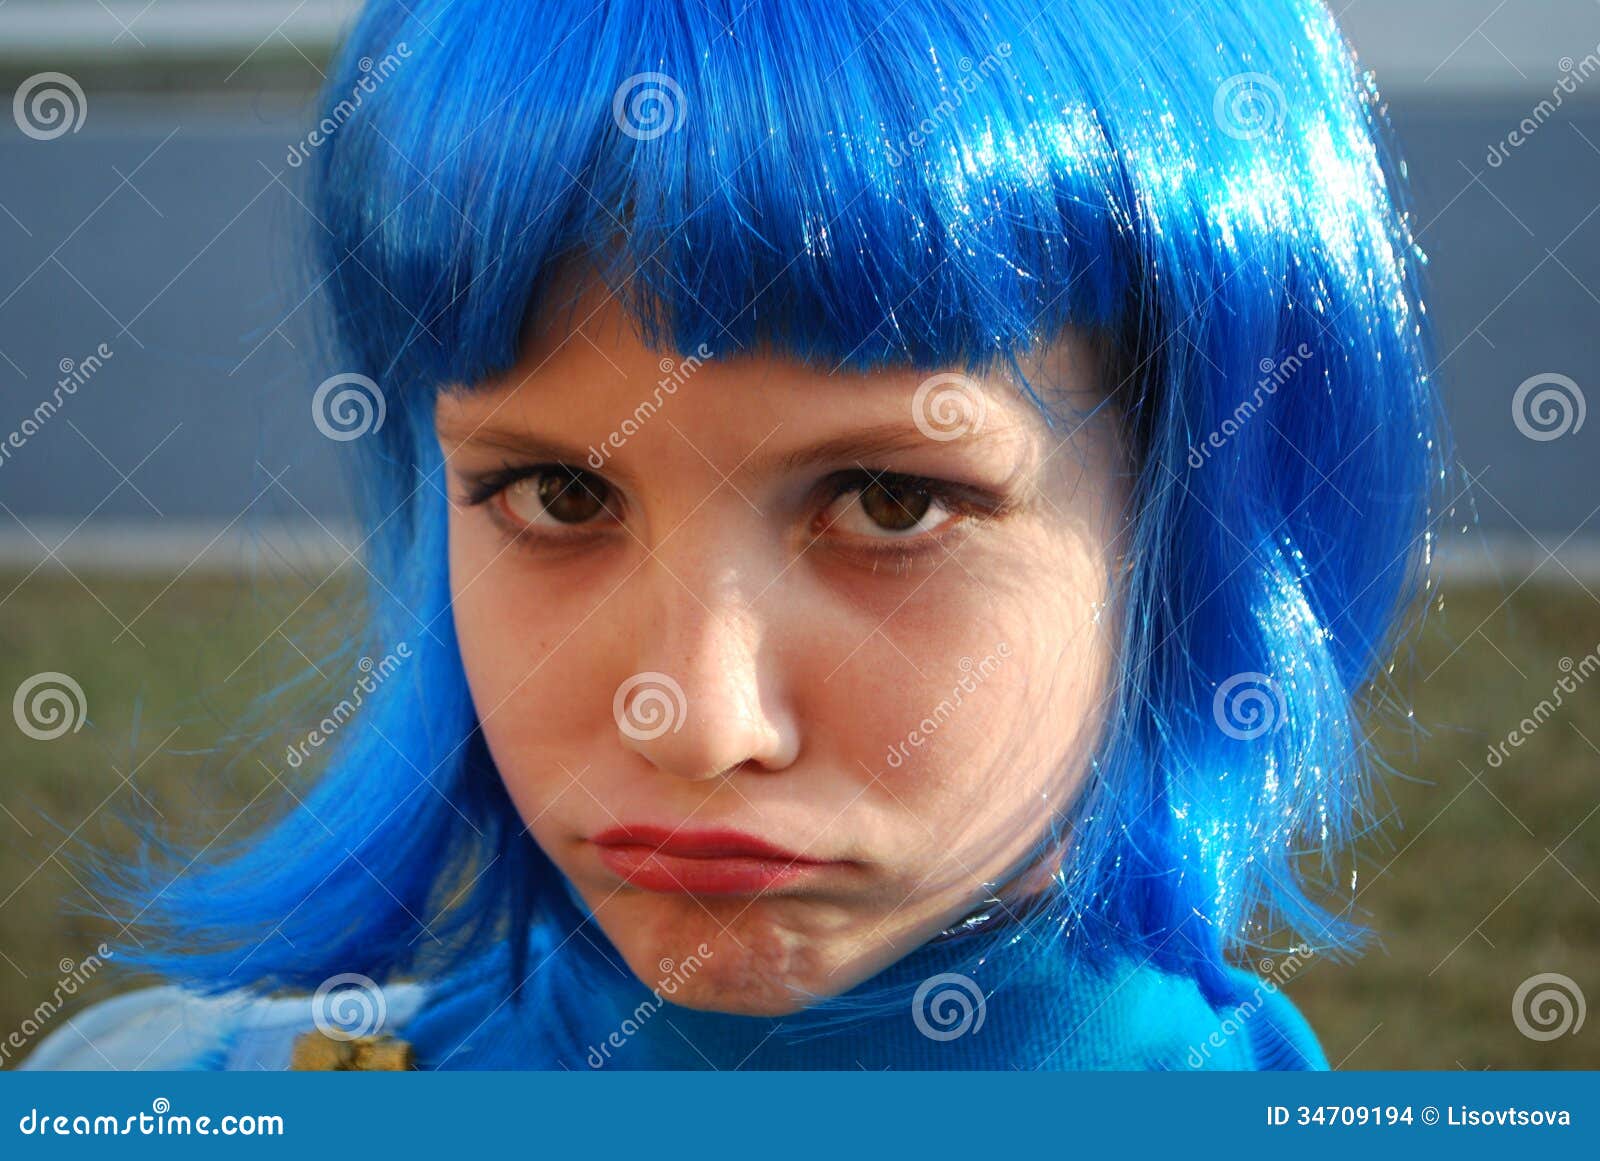 blue girl hair asheville